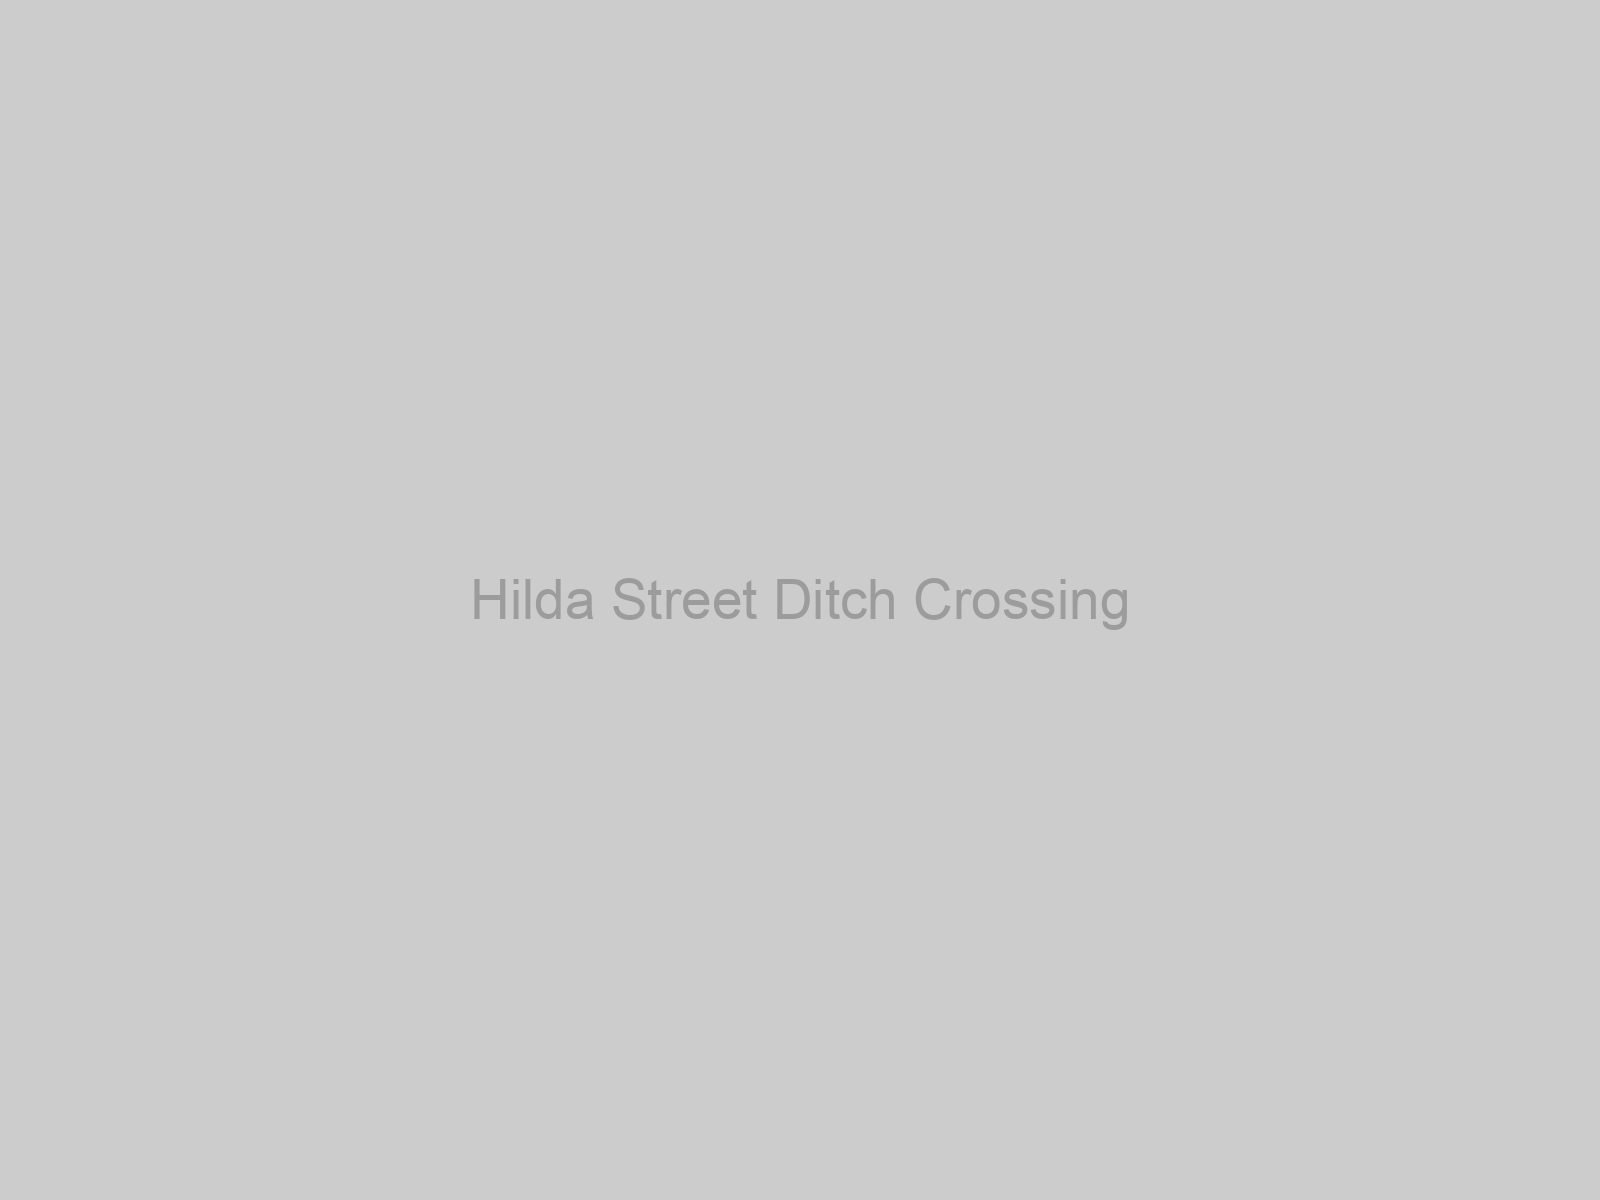 Hilda Street Ditch Crossing